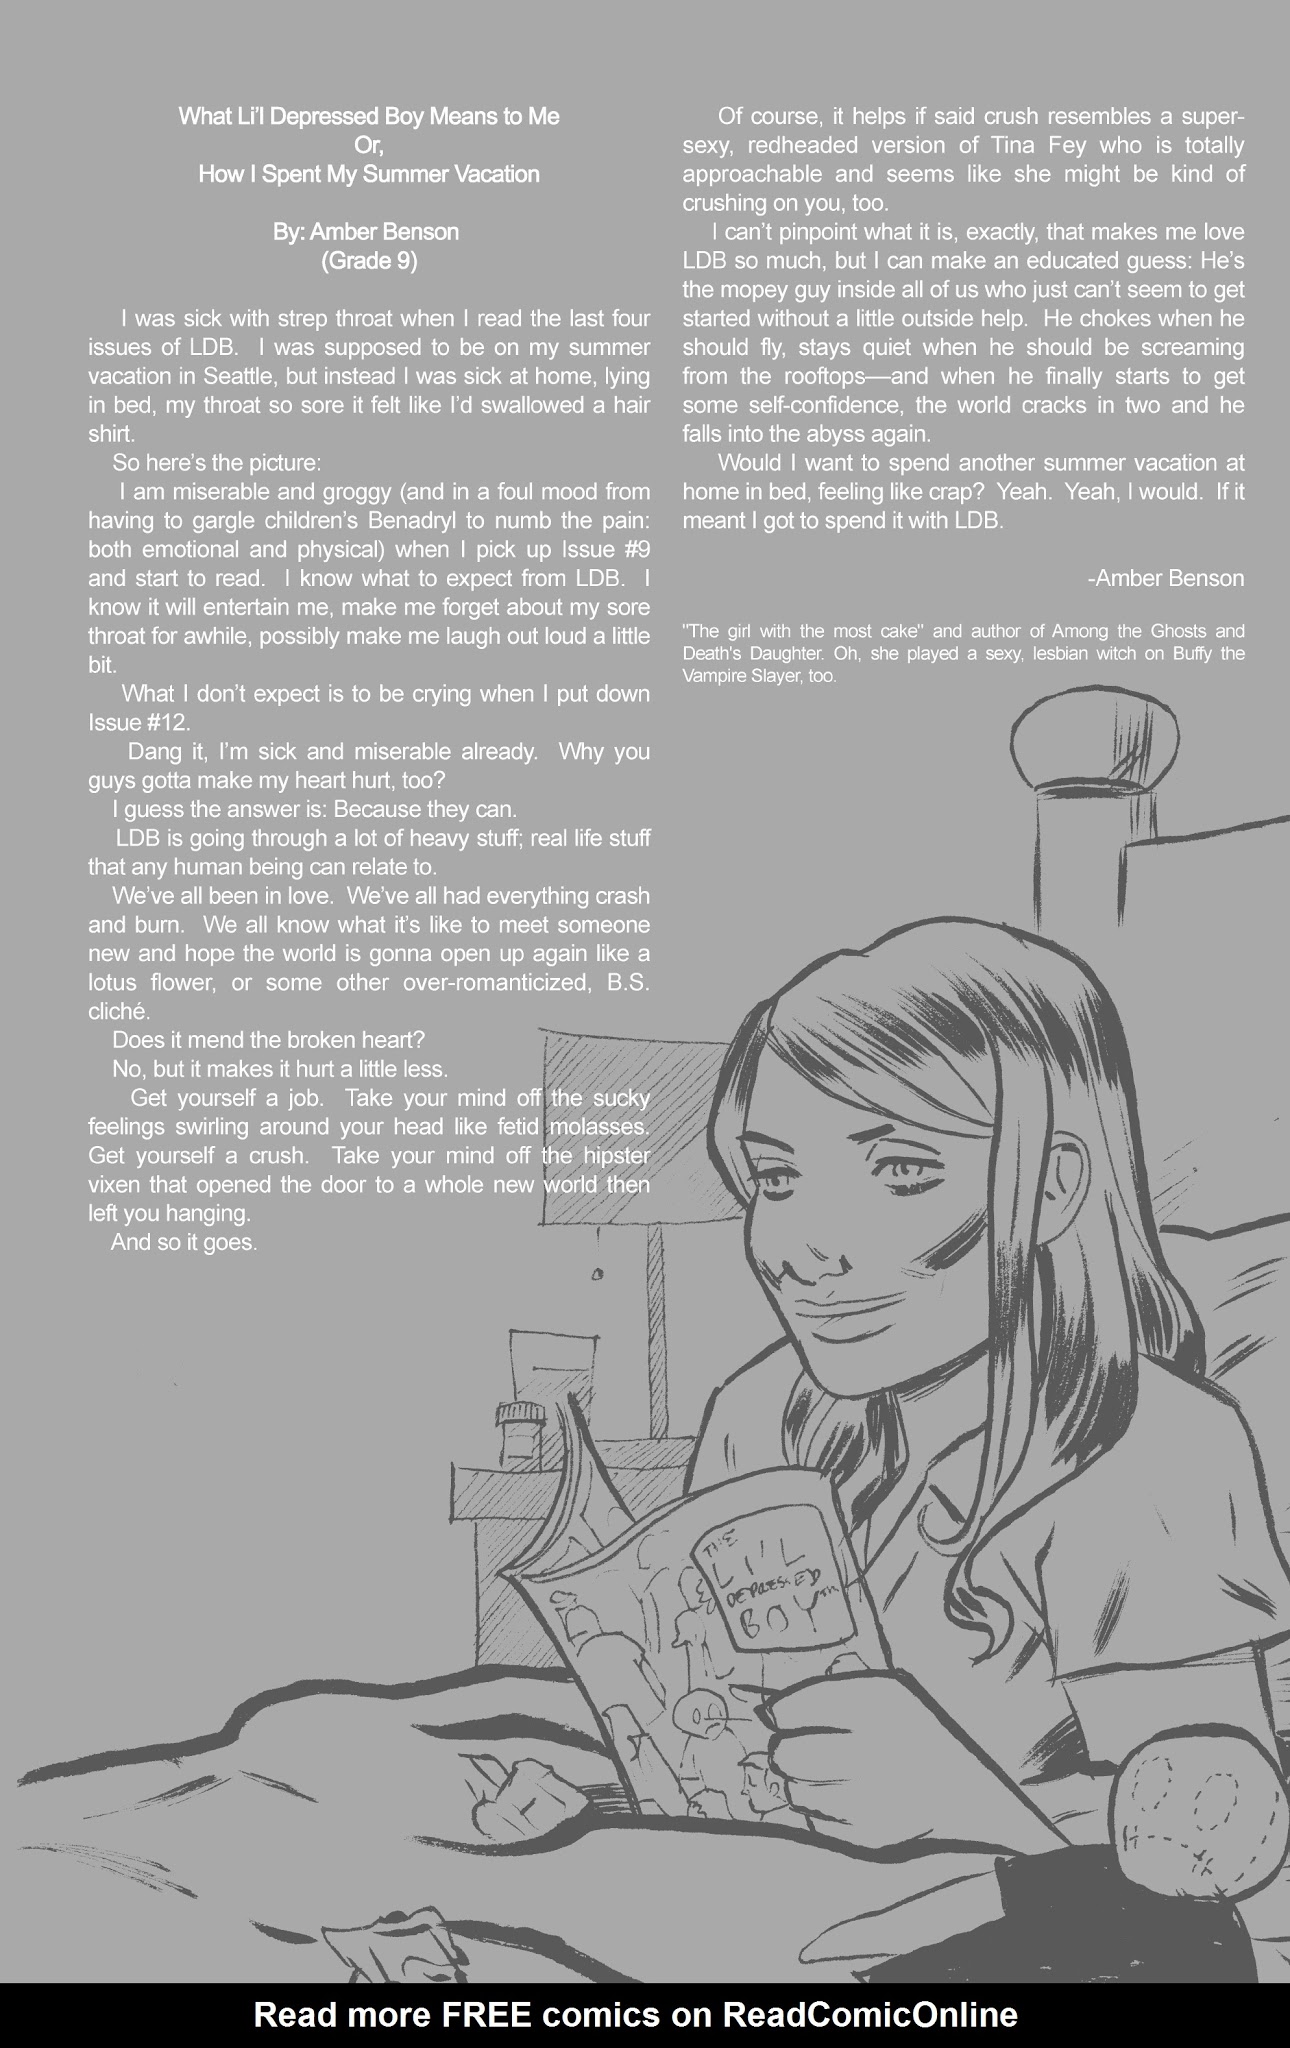 Read online The Li'l Depressed Boy comic -  Issue # TPB 3 - 5